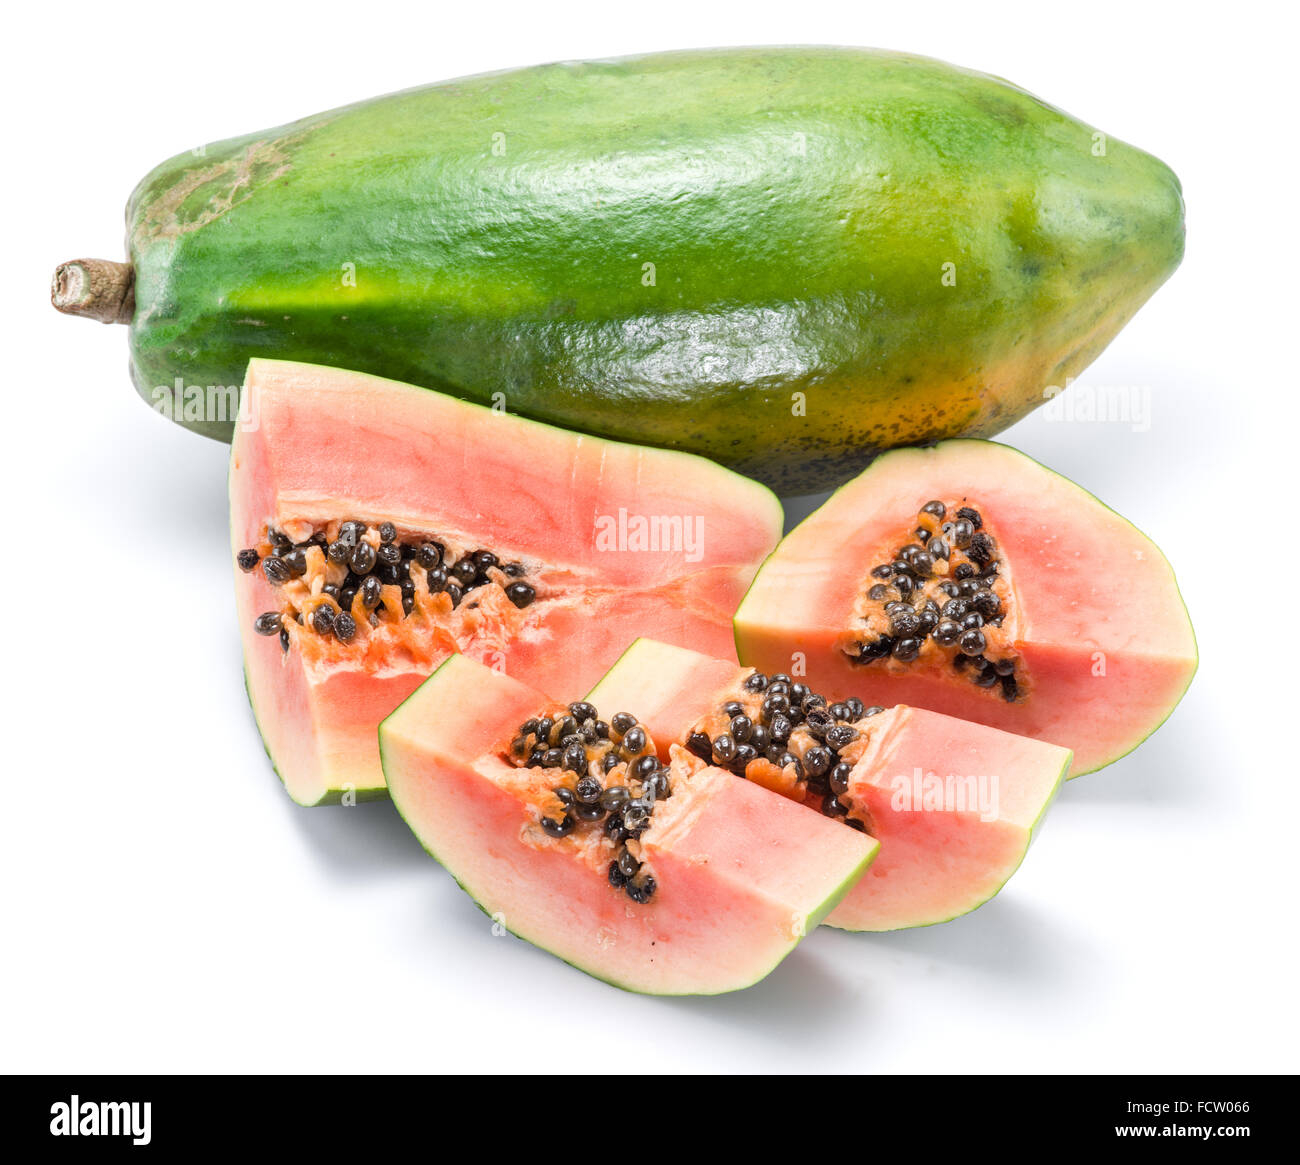 Papaya fruit isolated on a white background. Stock Photo